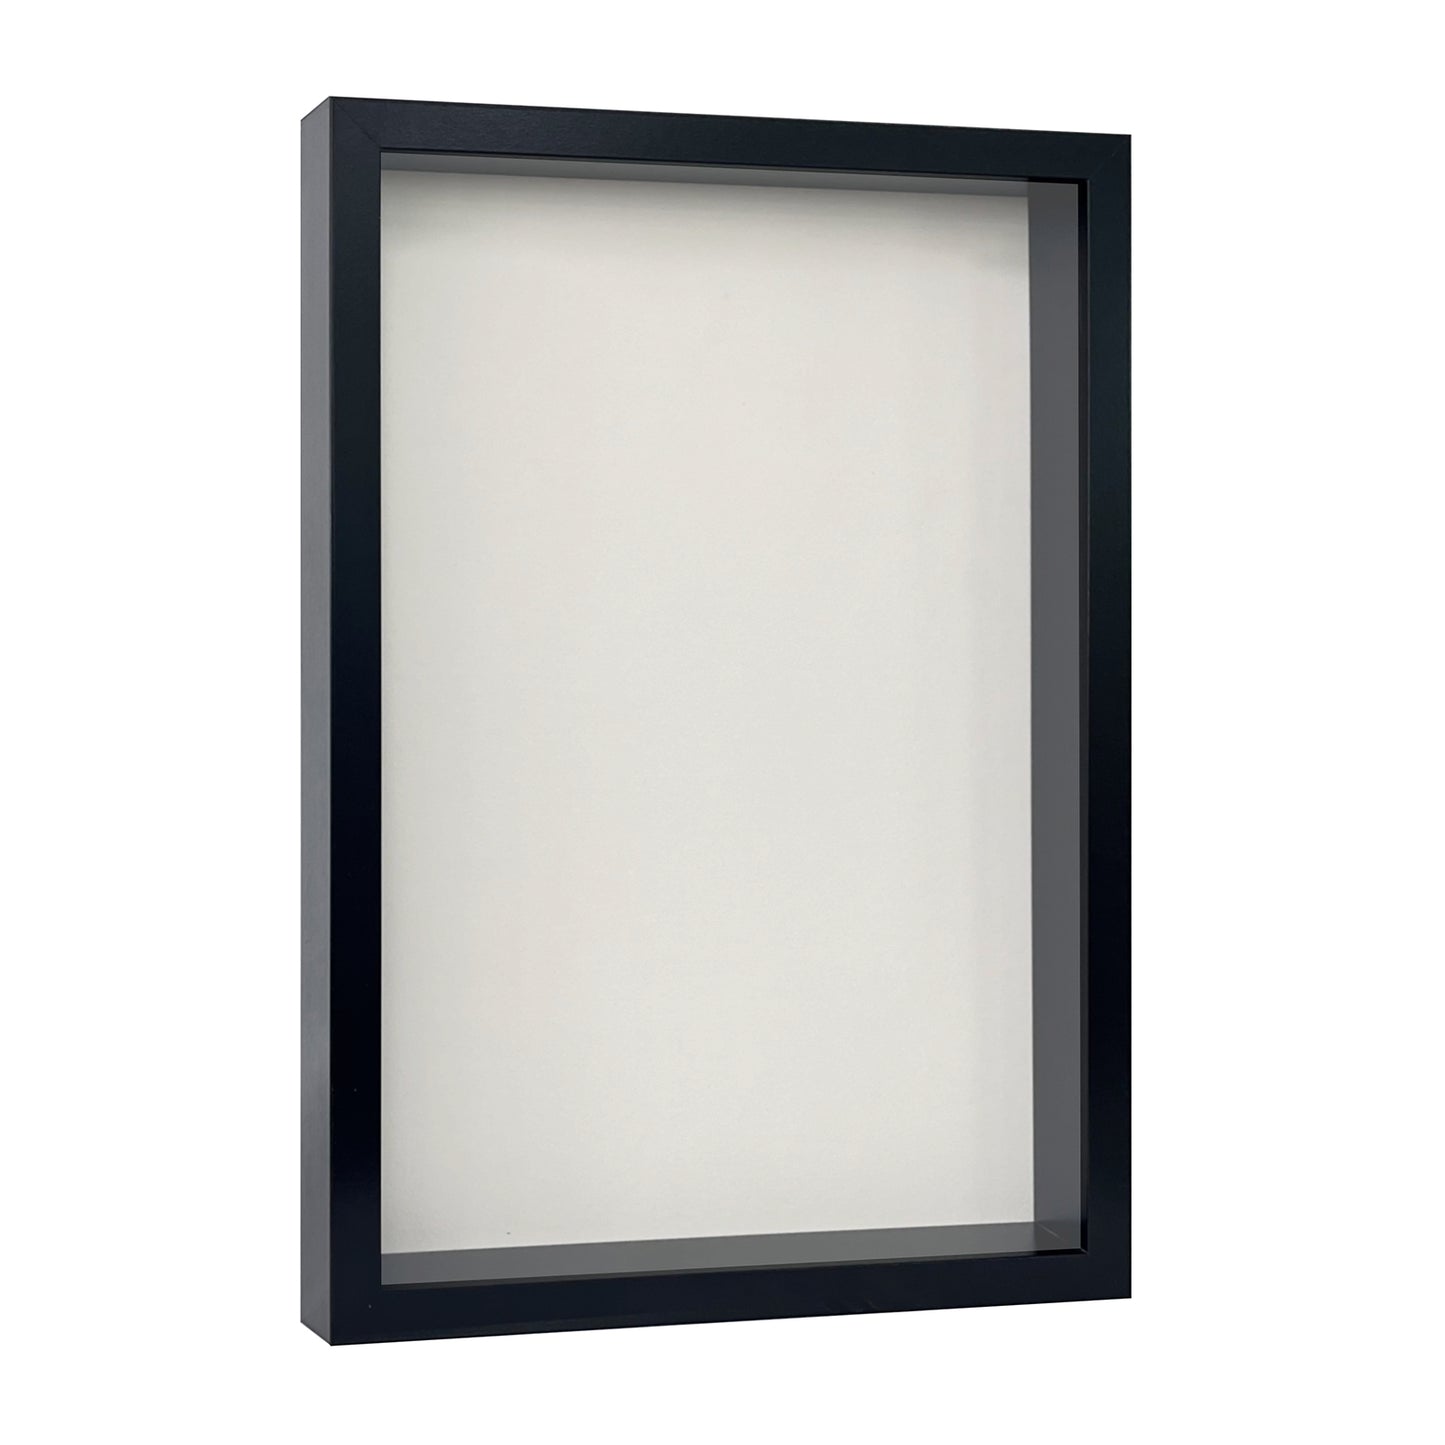 12" x 18” Black MDF Wood Shadow Box Frame